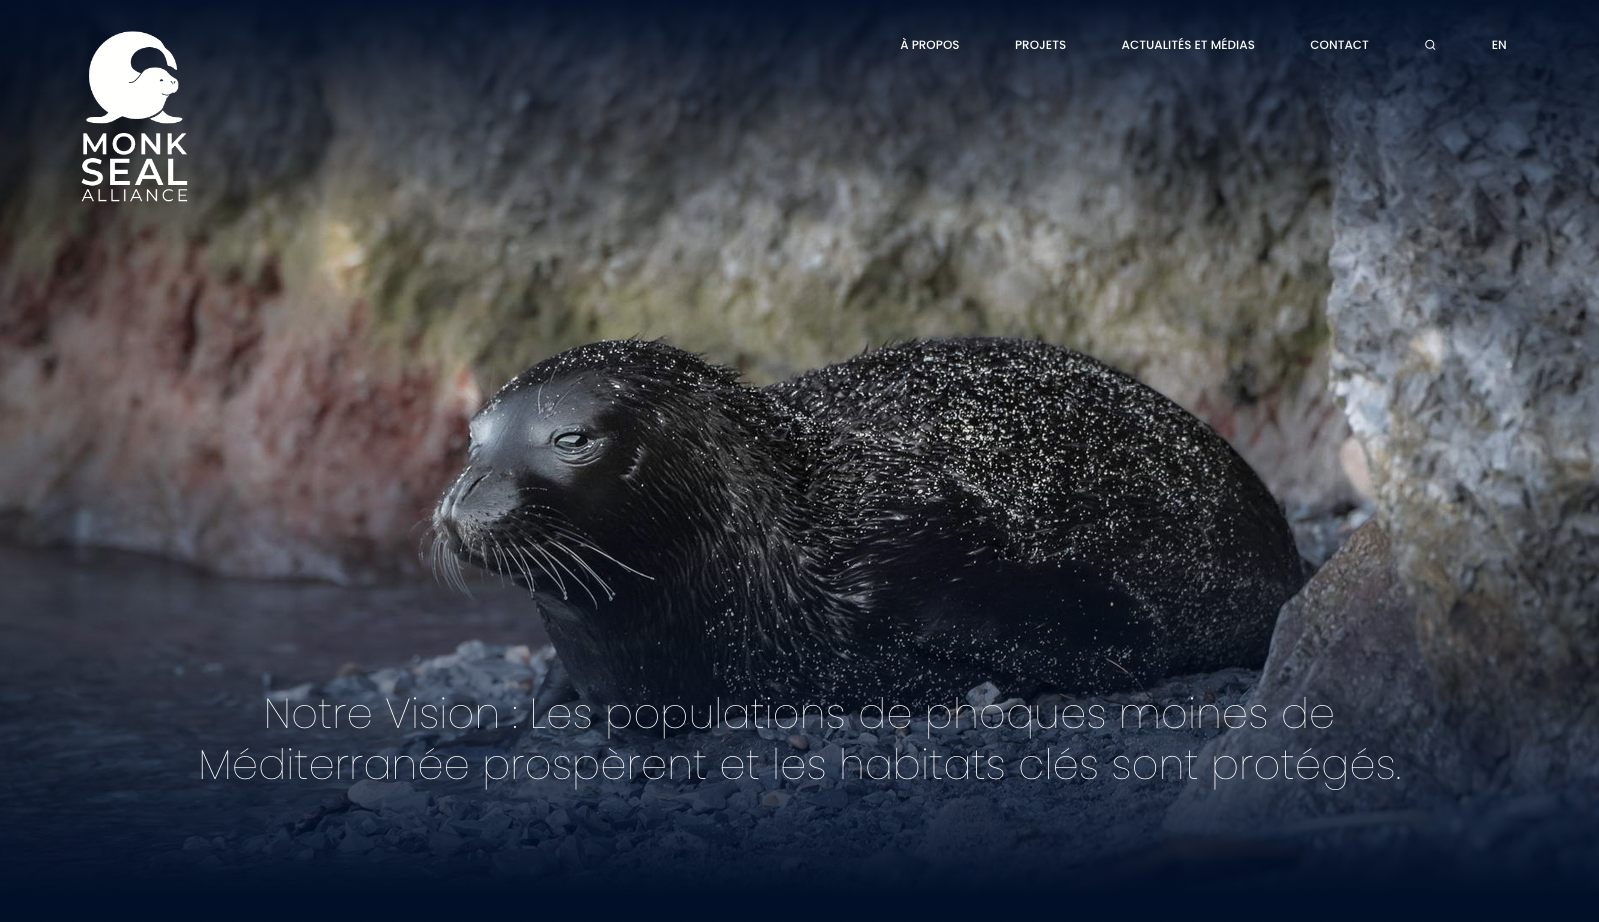 Monk Seal Alliance - Création du site internet